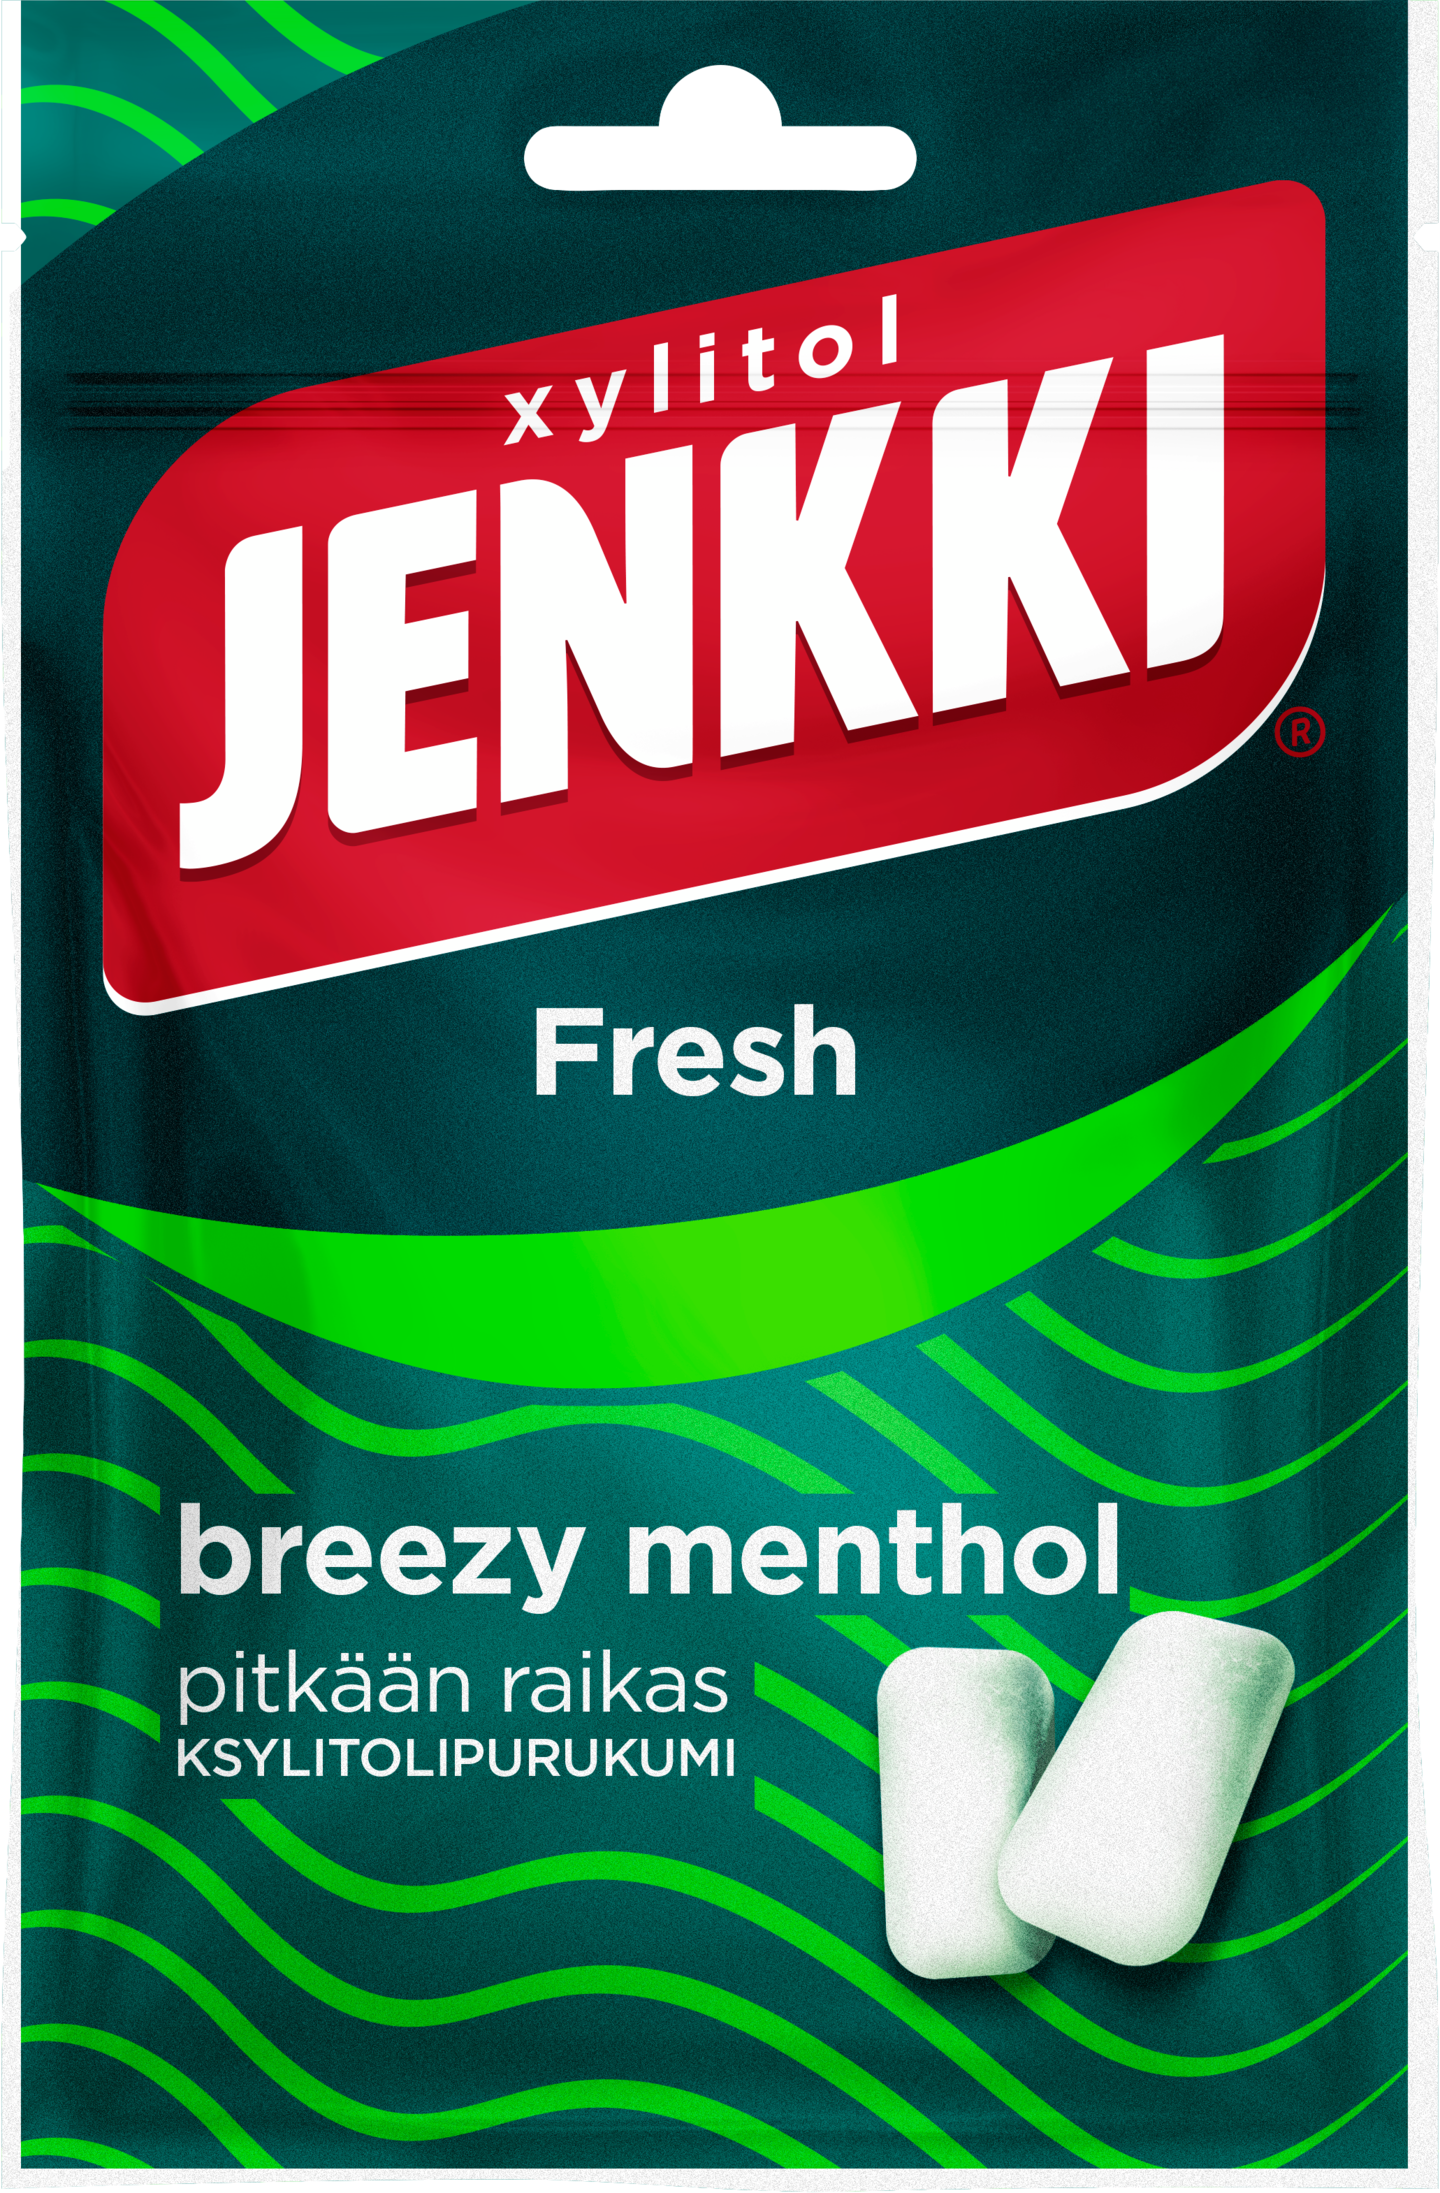 Jenkki Fresh ksylitolipurukumi 35g Breezy Menthol